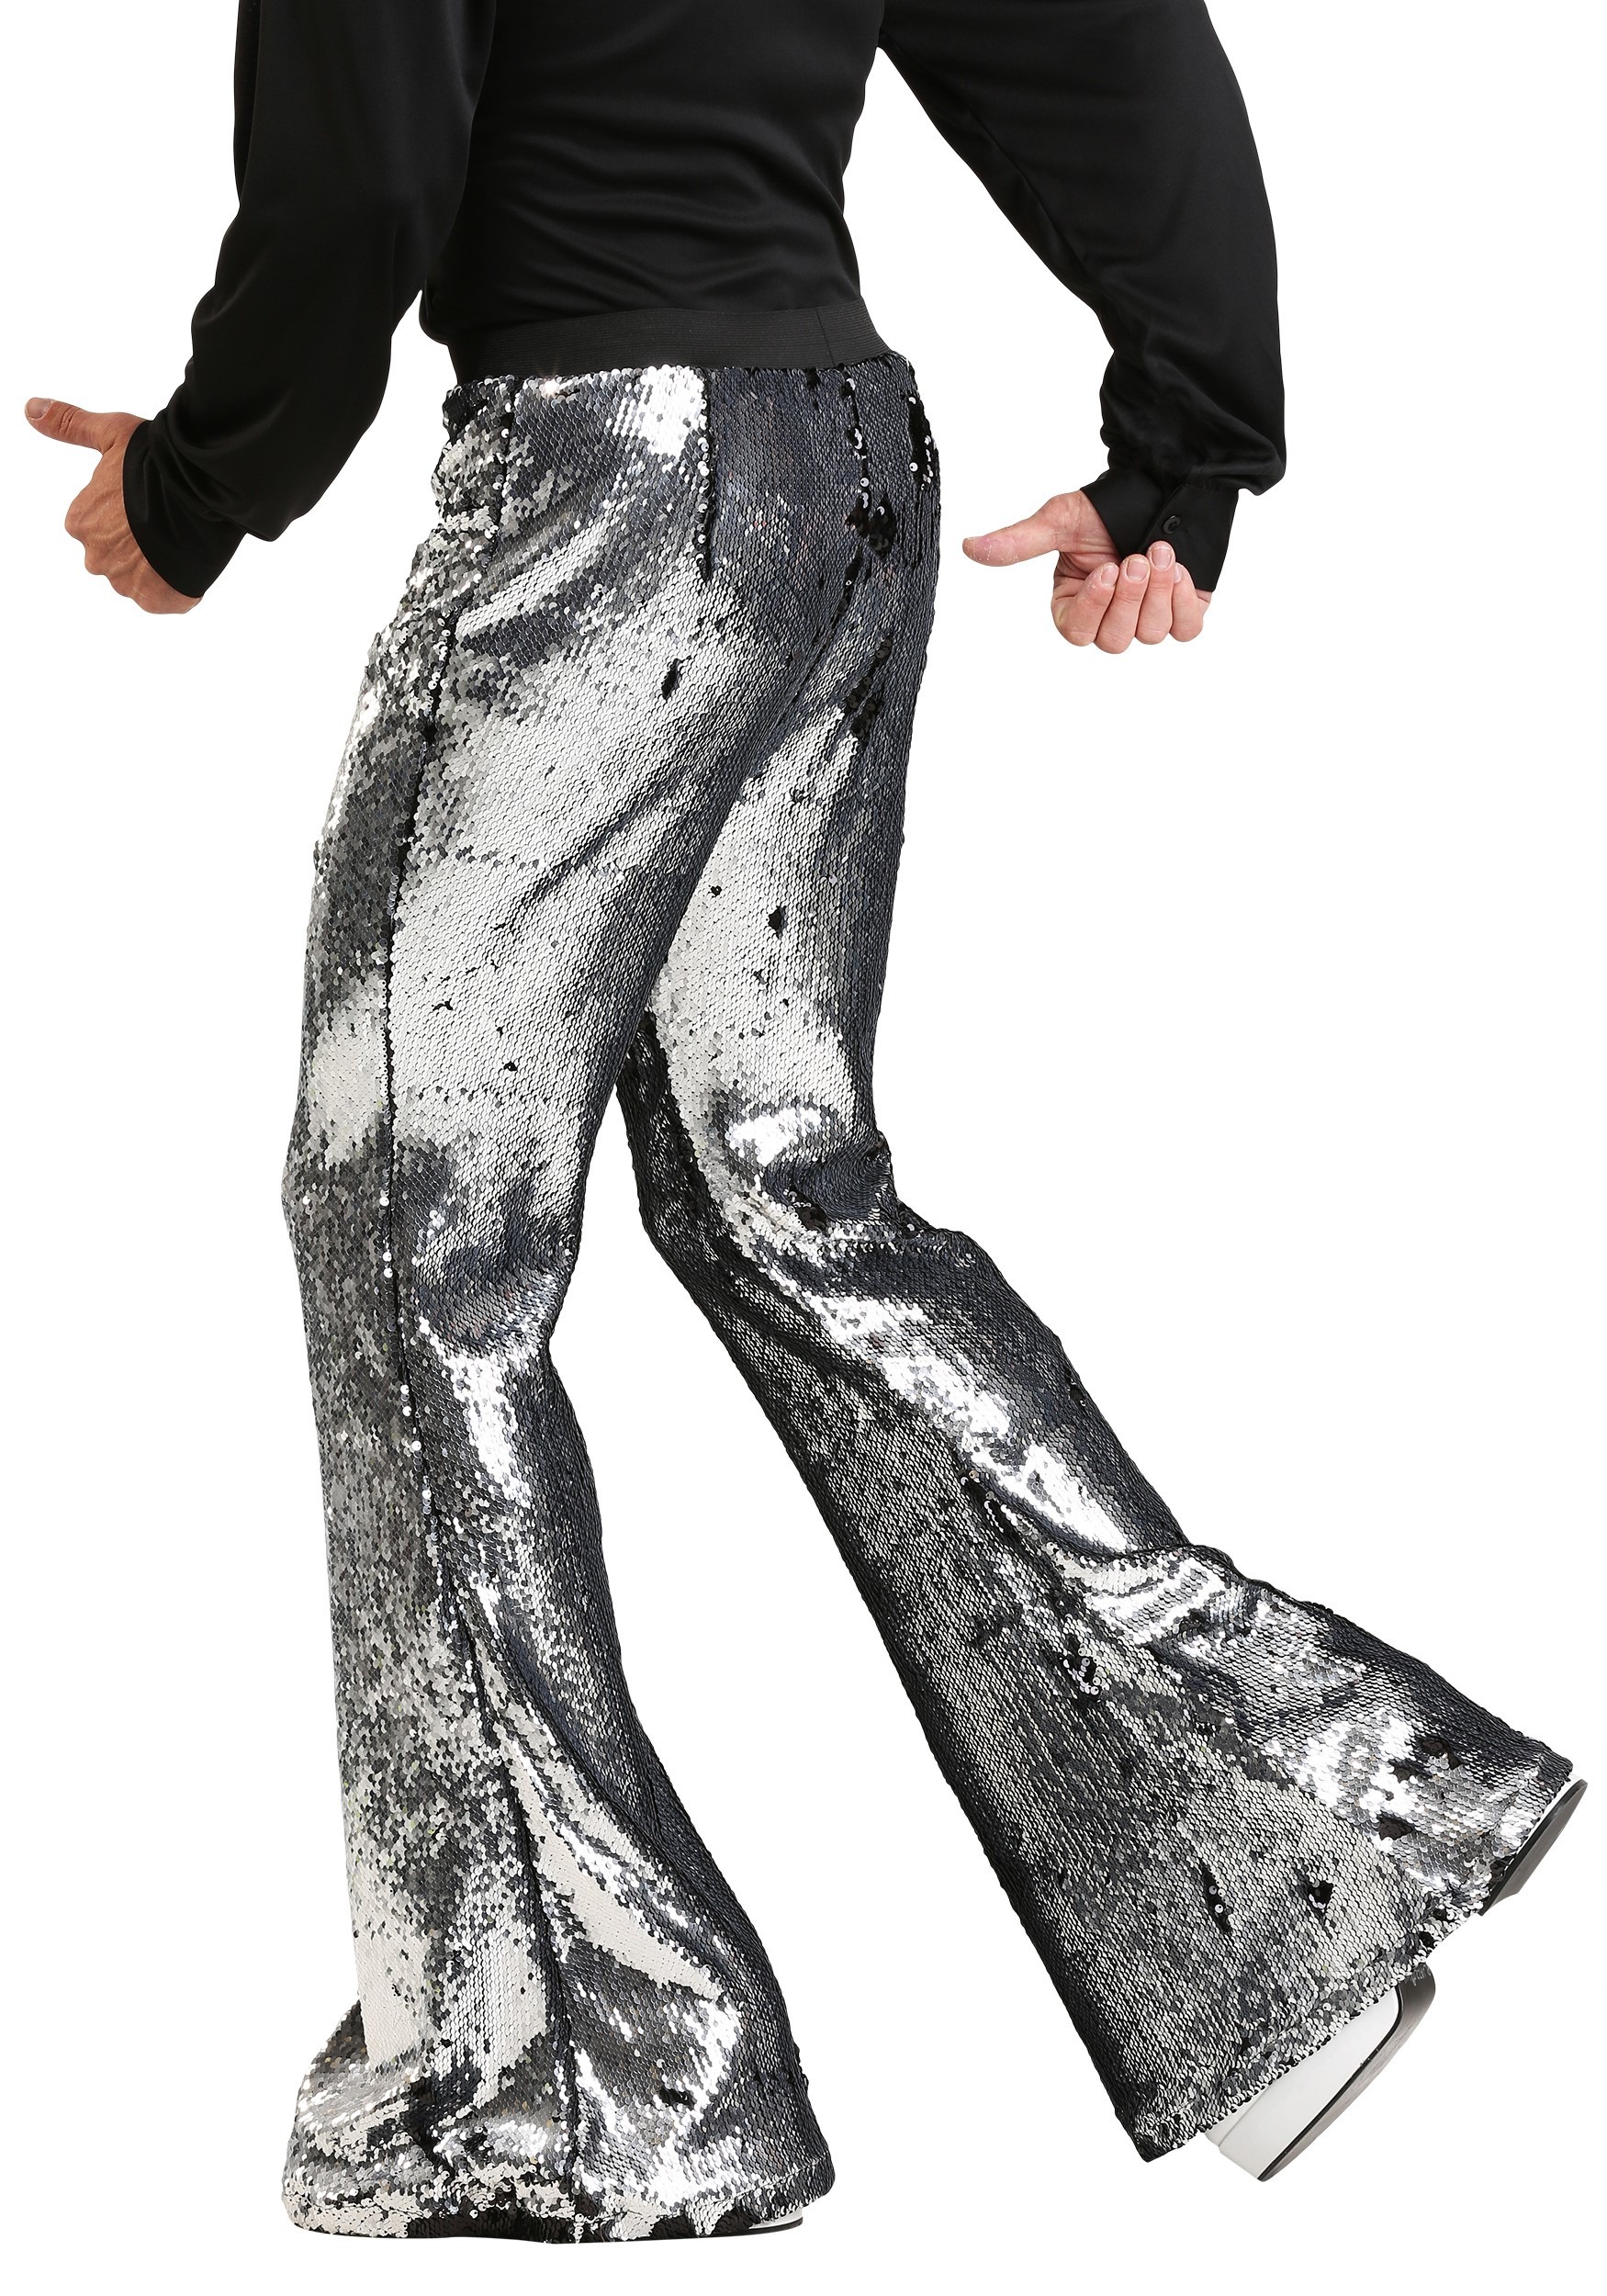 ・パンツに Men's Silver Sequin ディスコ Pants メンズ コスプレ 衣装 男性 仮装 男性用 イベント パーティ ...